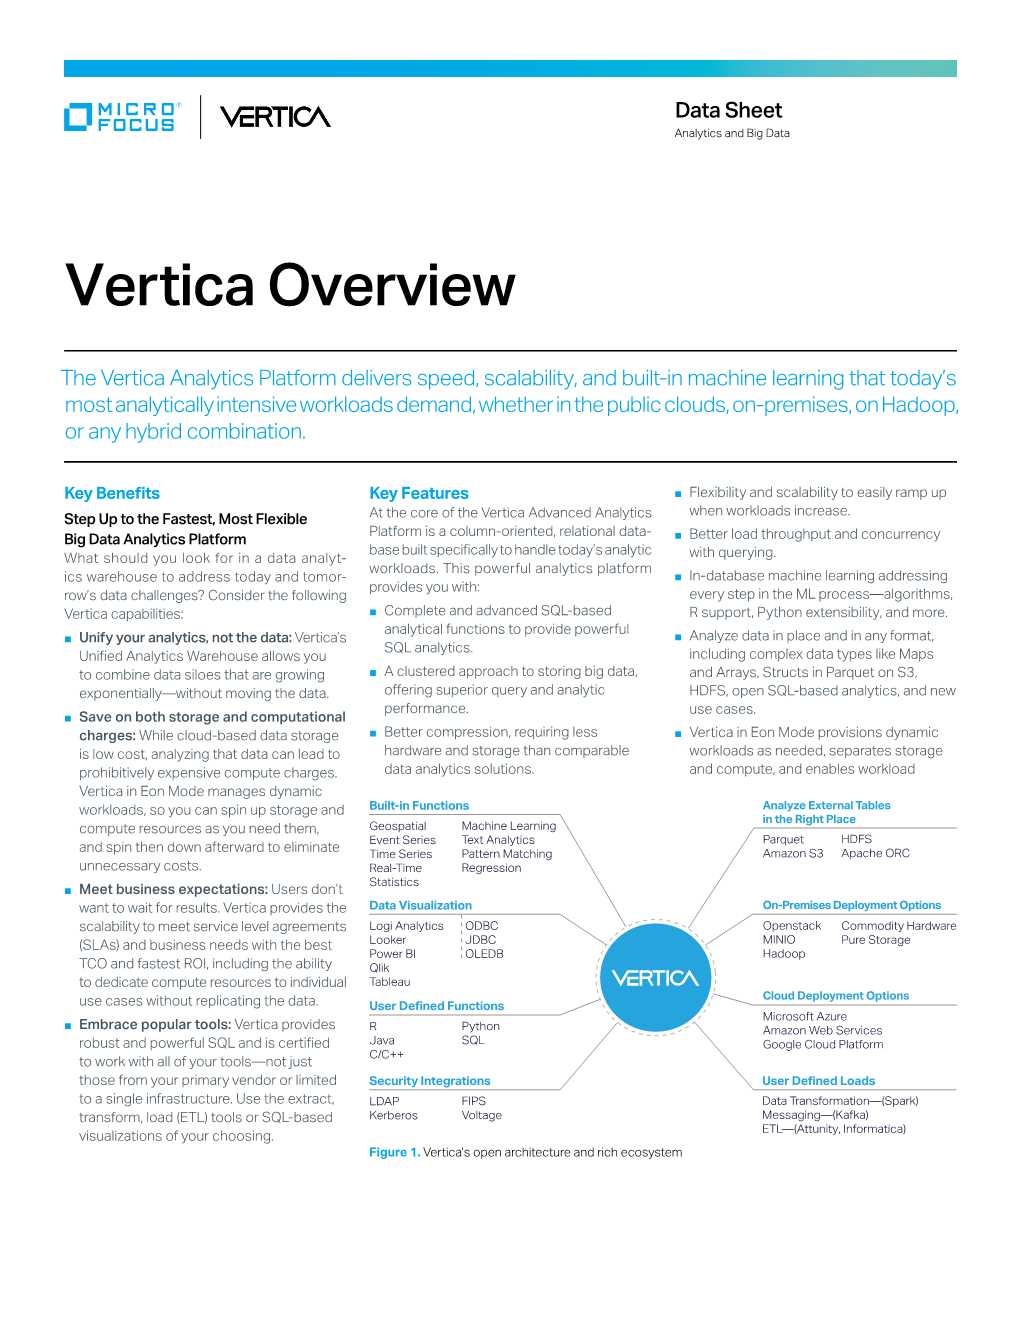 Vertica Overview Data Sheet